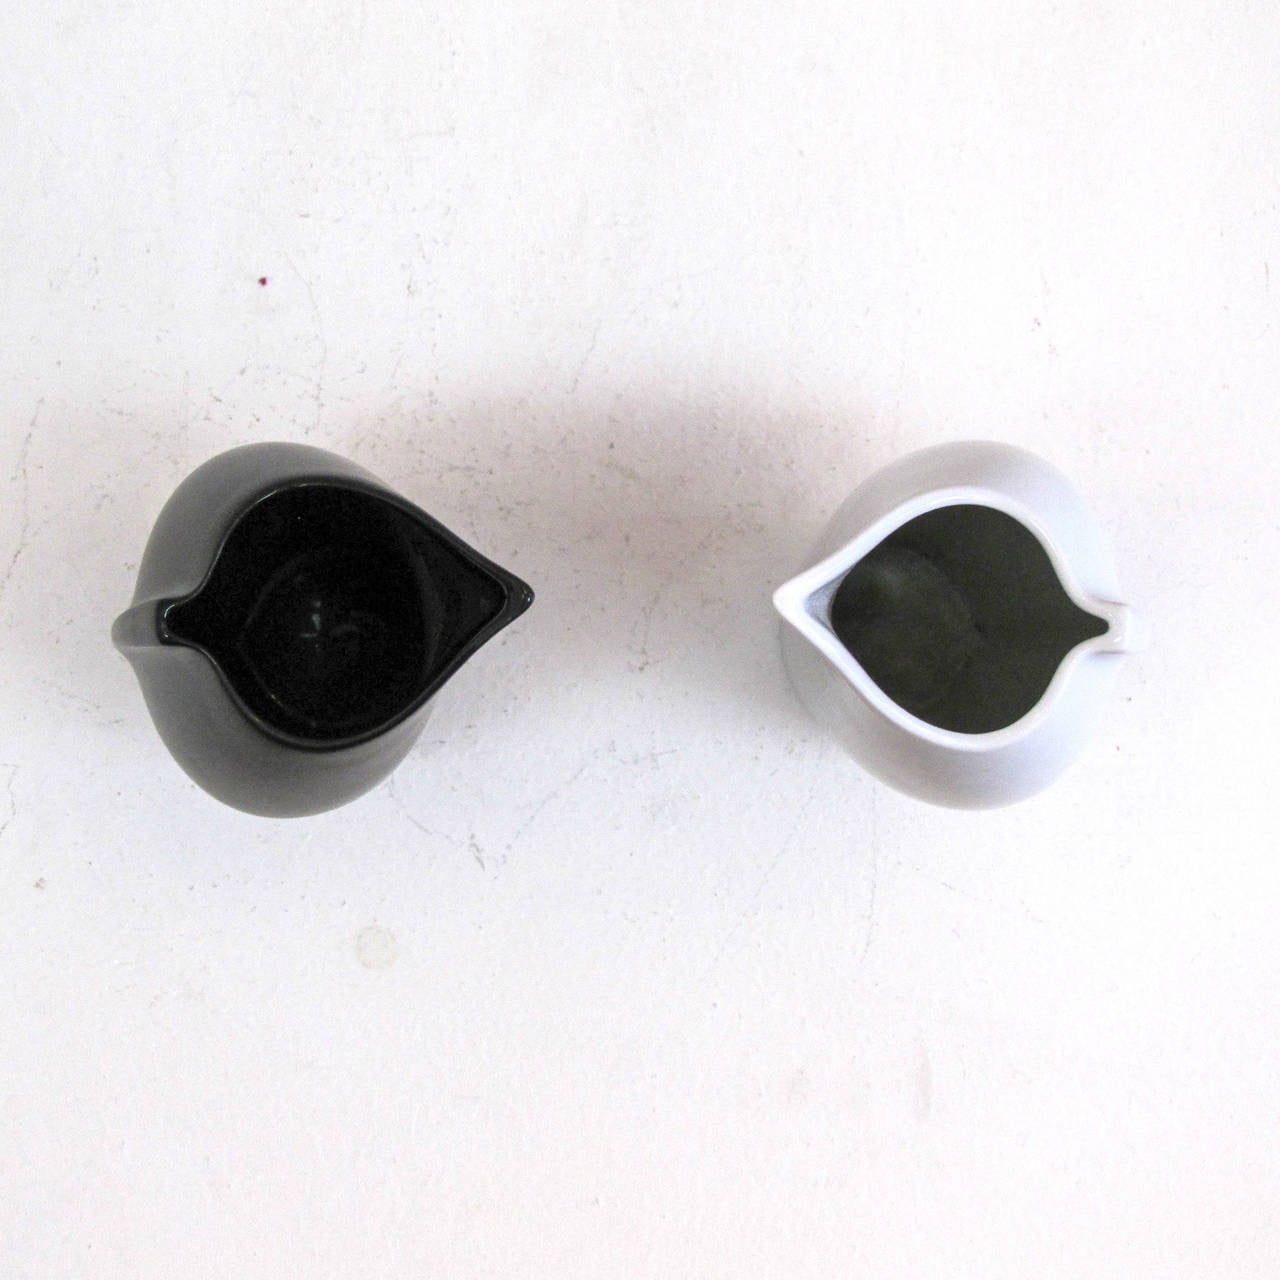 Lino Sabattini “Penguin” Vases for Rosenthal 1